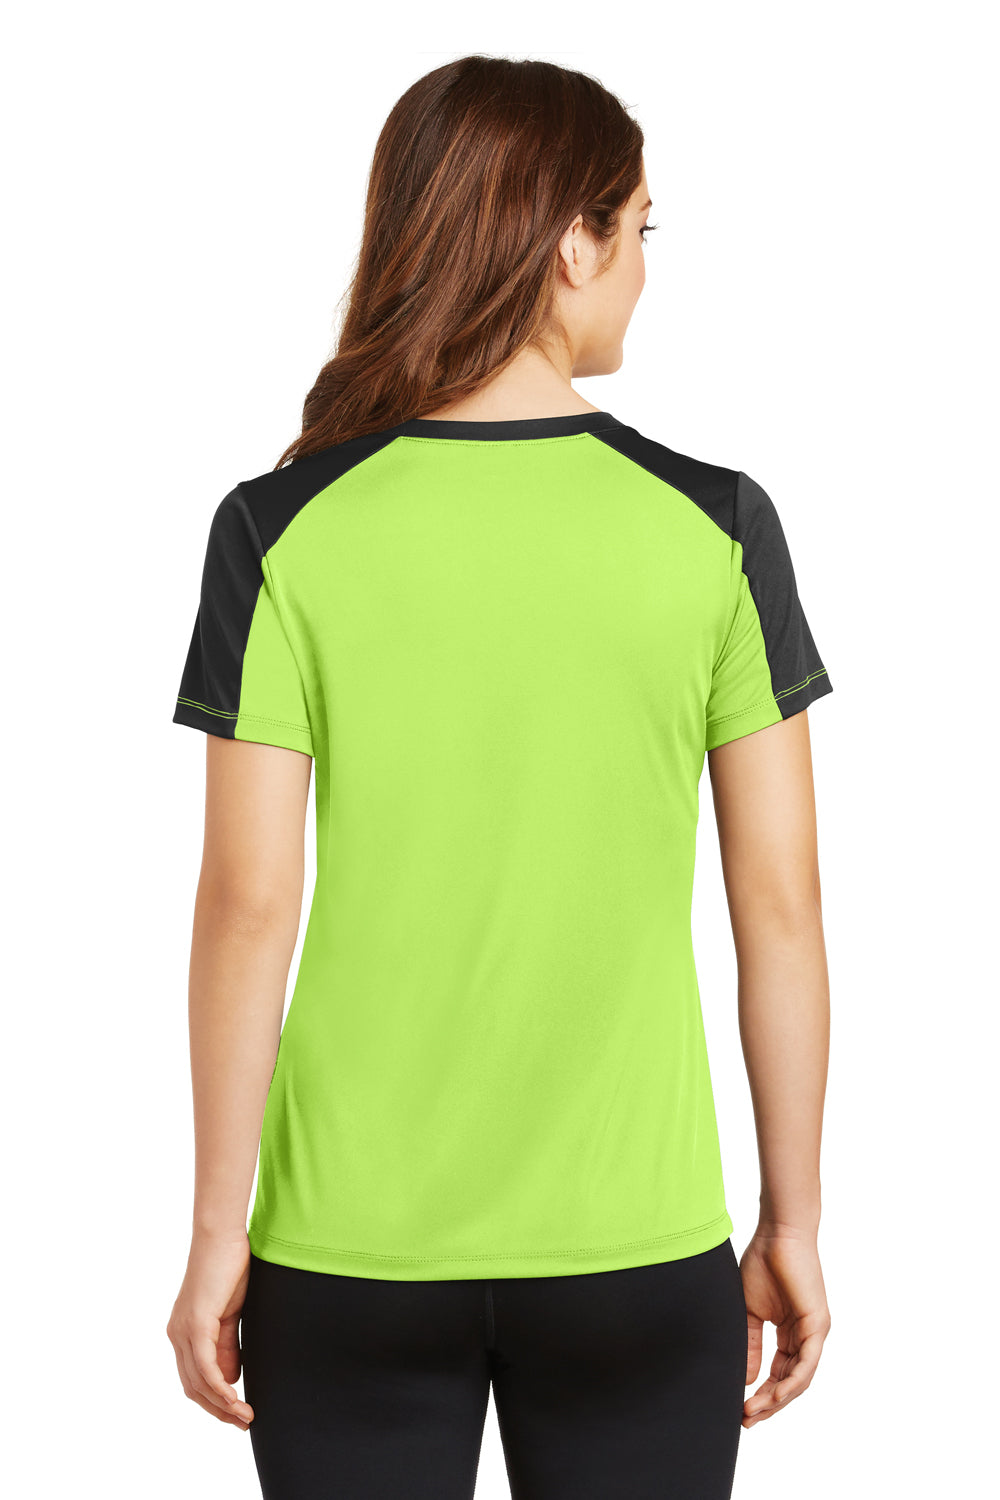 Sport-Tek LST354 Womens Competitor Moisture Wicking Short Sleeve V-Neck T-Shirt Lime Green/Black Back